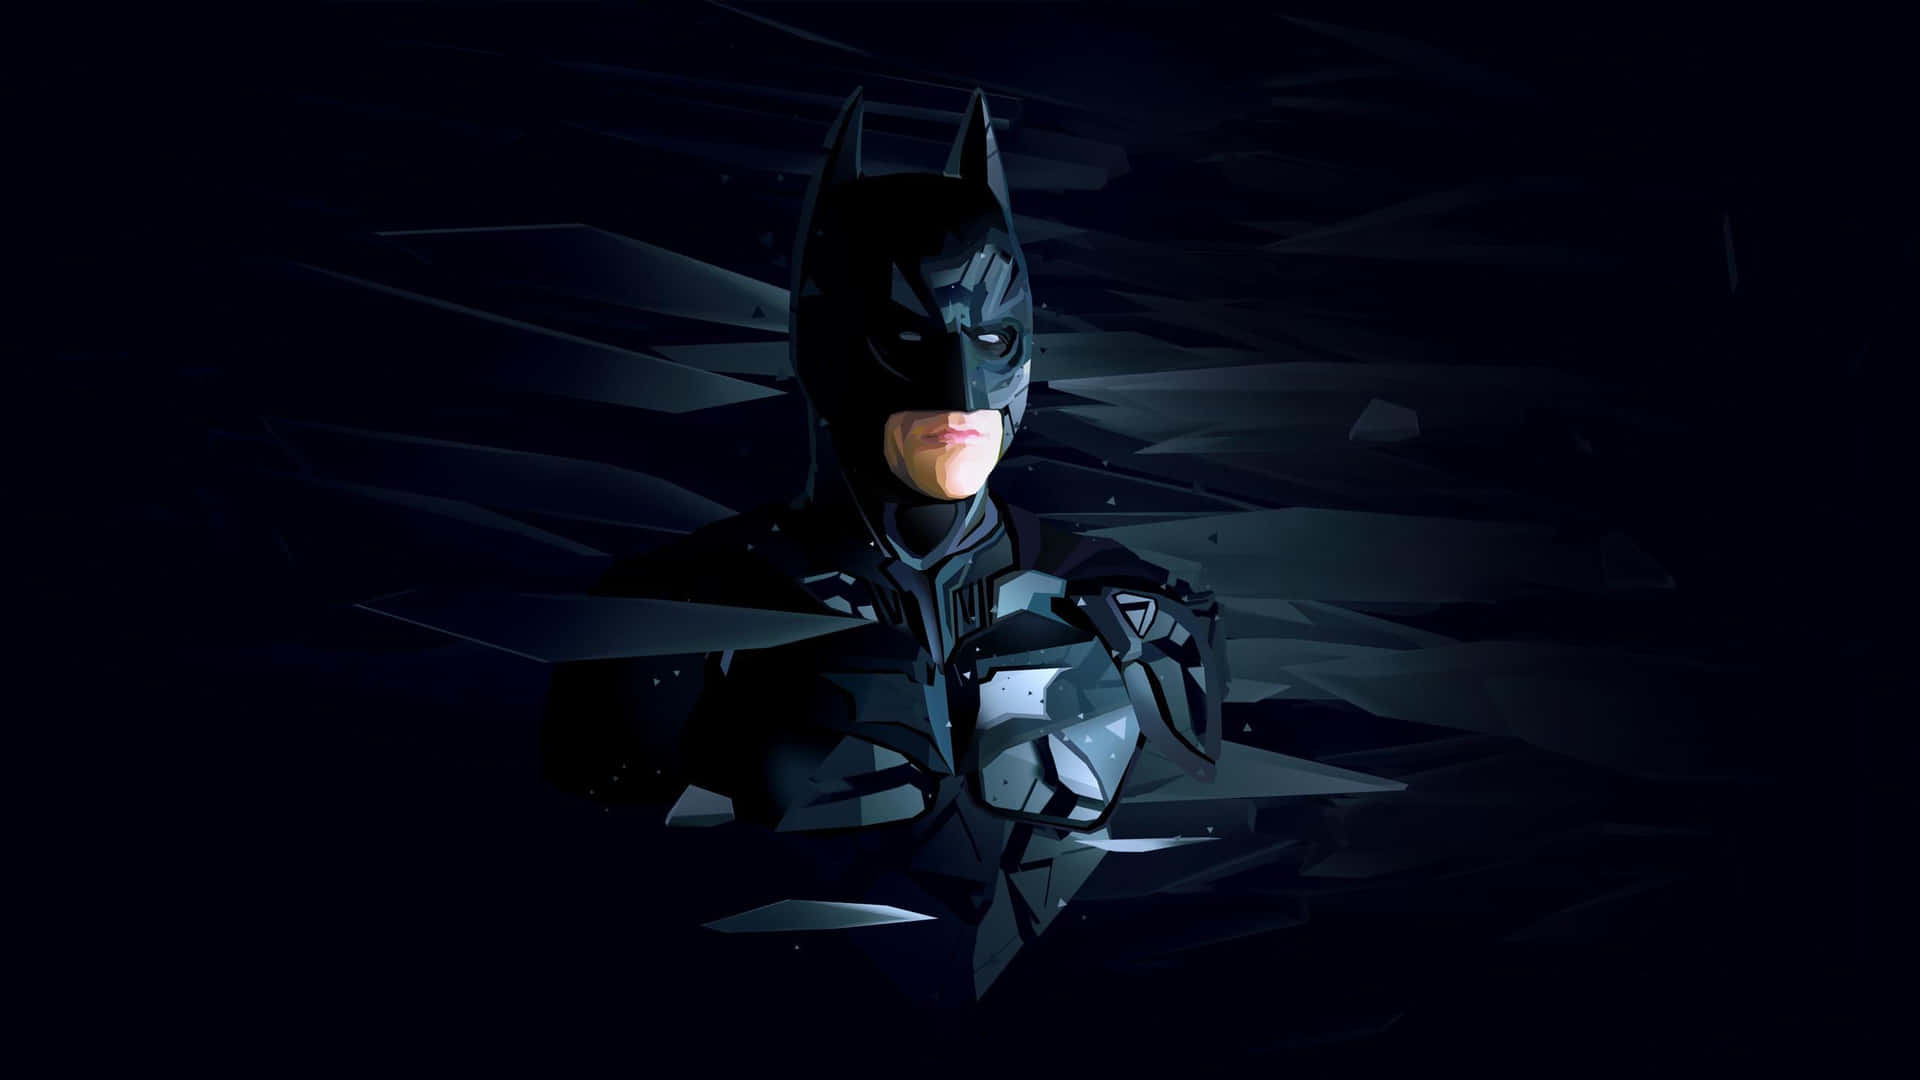 Batmanplana Nel Cielo Notturno In Una Magnifica Dimostrazione Di Eroismo. Sfondo